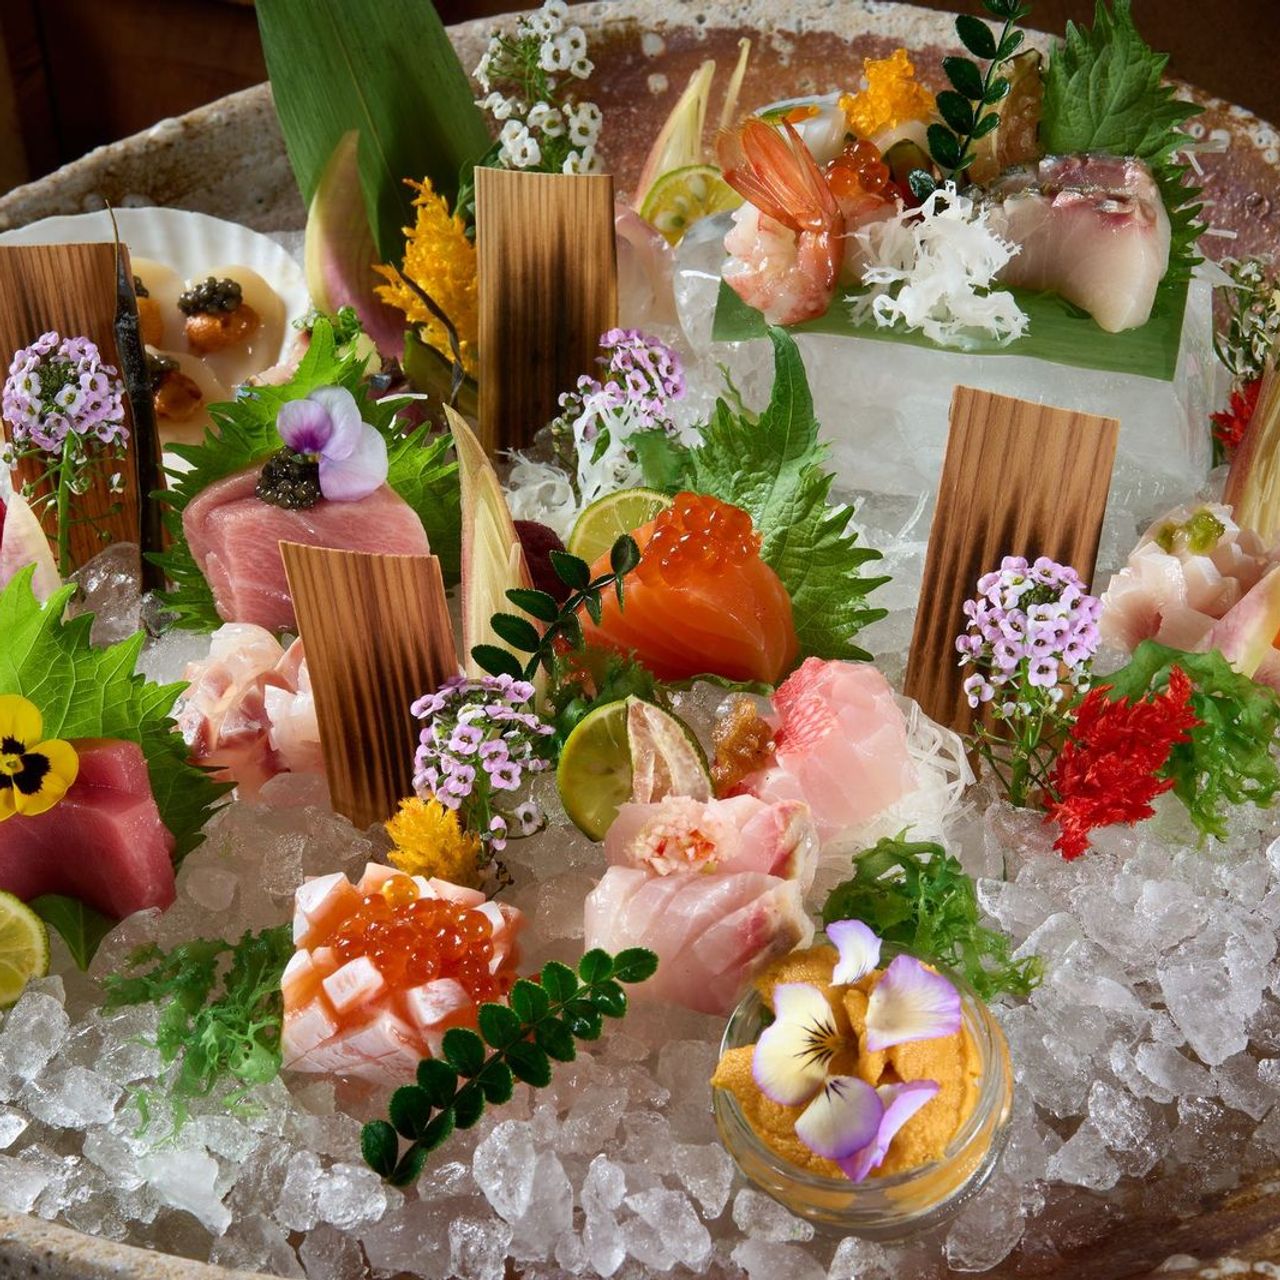 Japanese restaurant Zuma adds a Saturday brunch starting Memorial Day  weekend - Eater Vegas